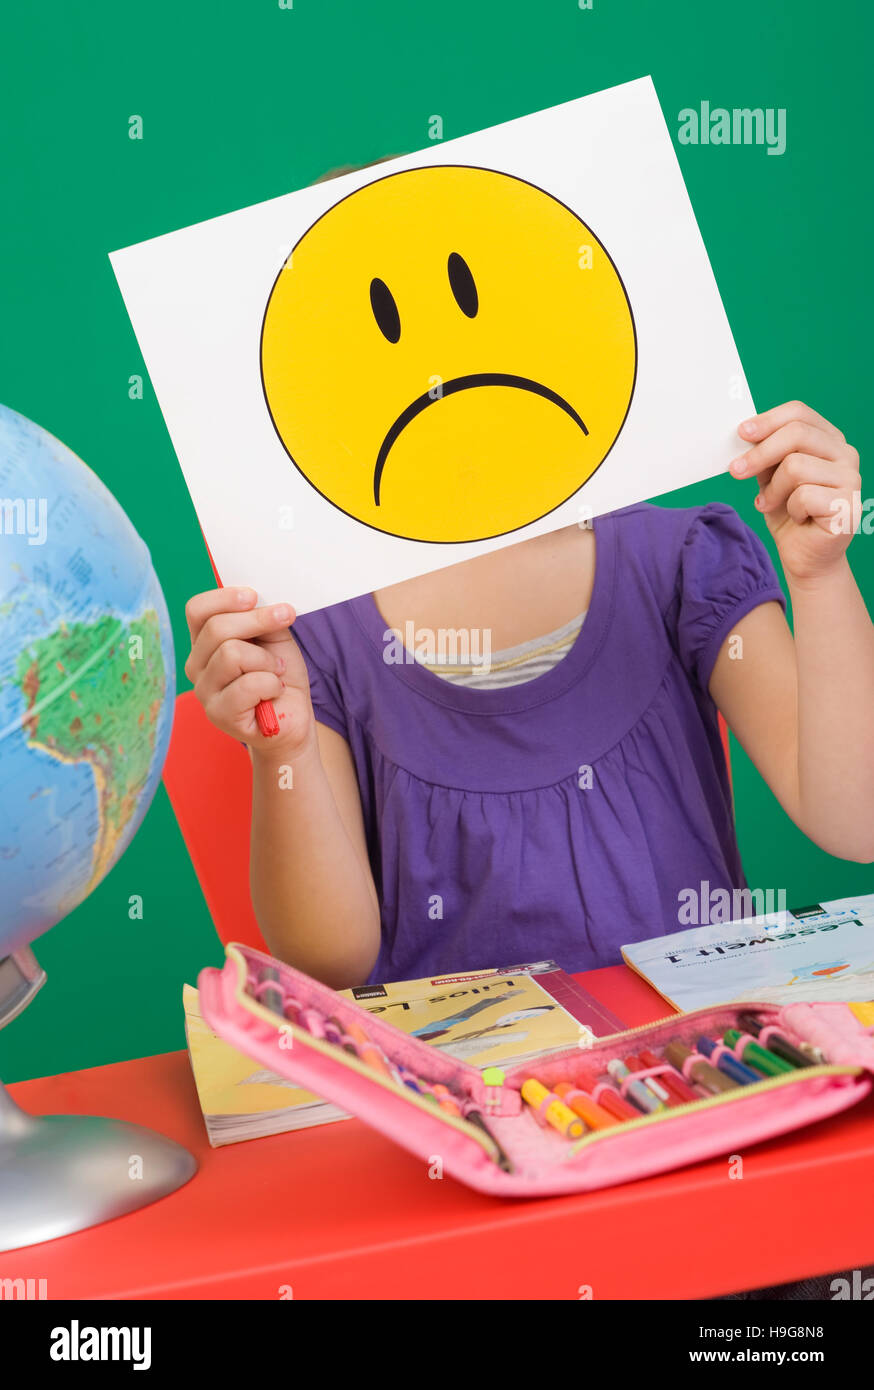 Mädchen an ihrem Schreibtisch, trauriger Smiley, symbolisches Bild für Probleme in der Schule Stockfoto